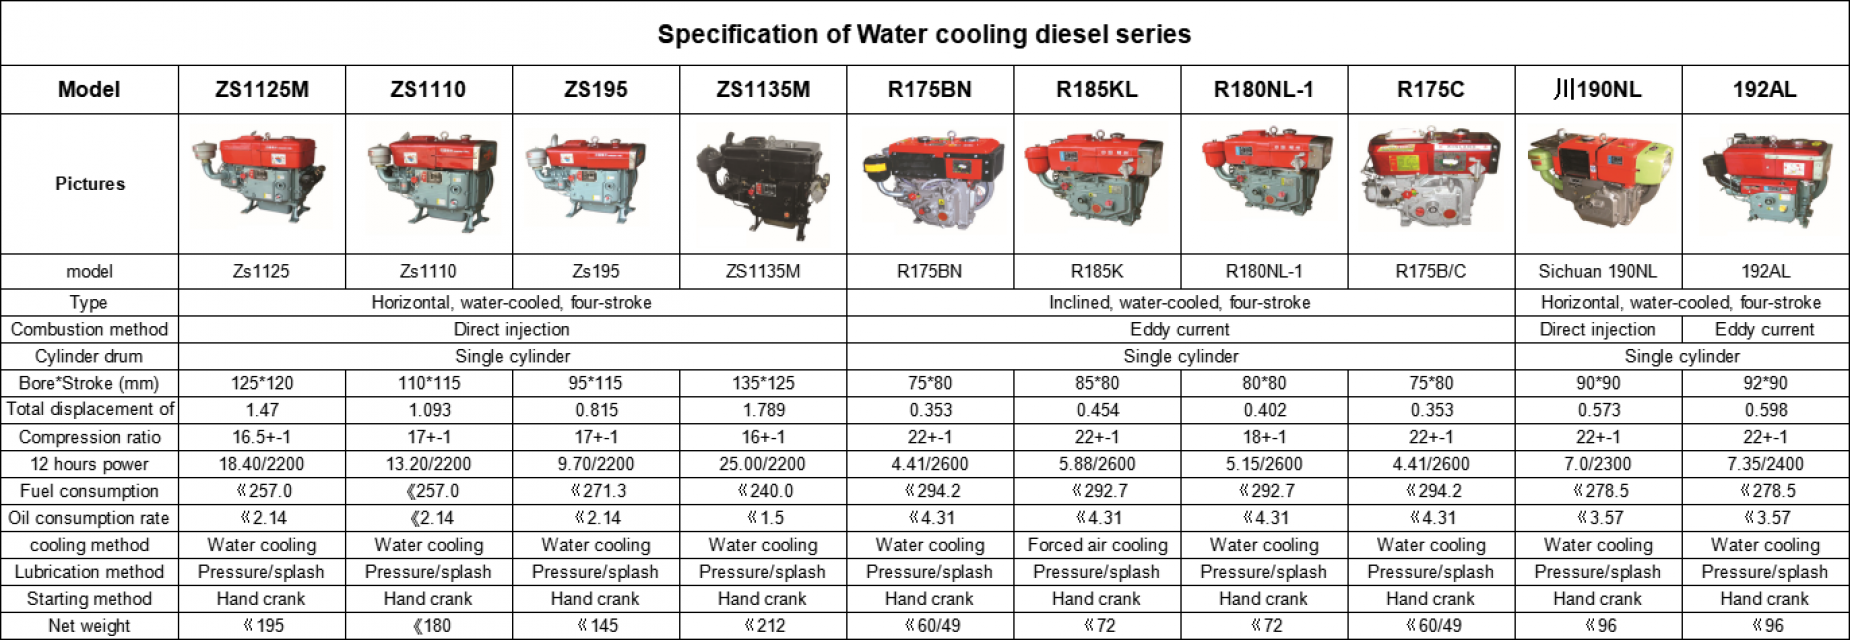 Water cooling diesel series